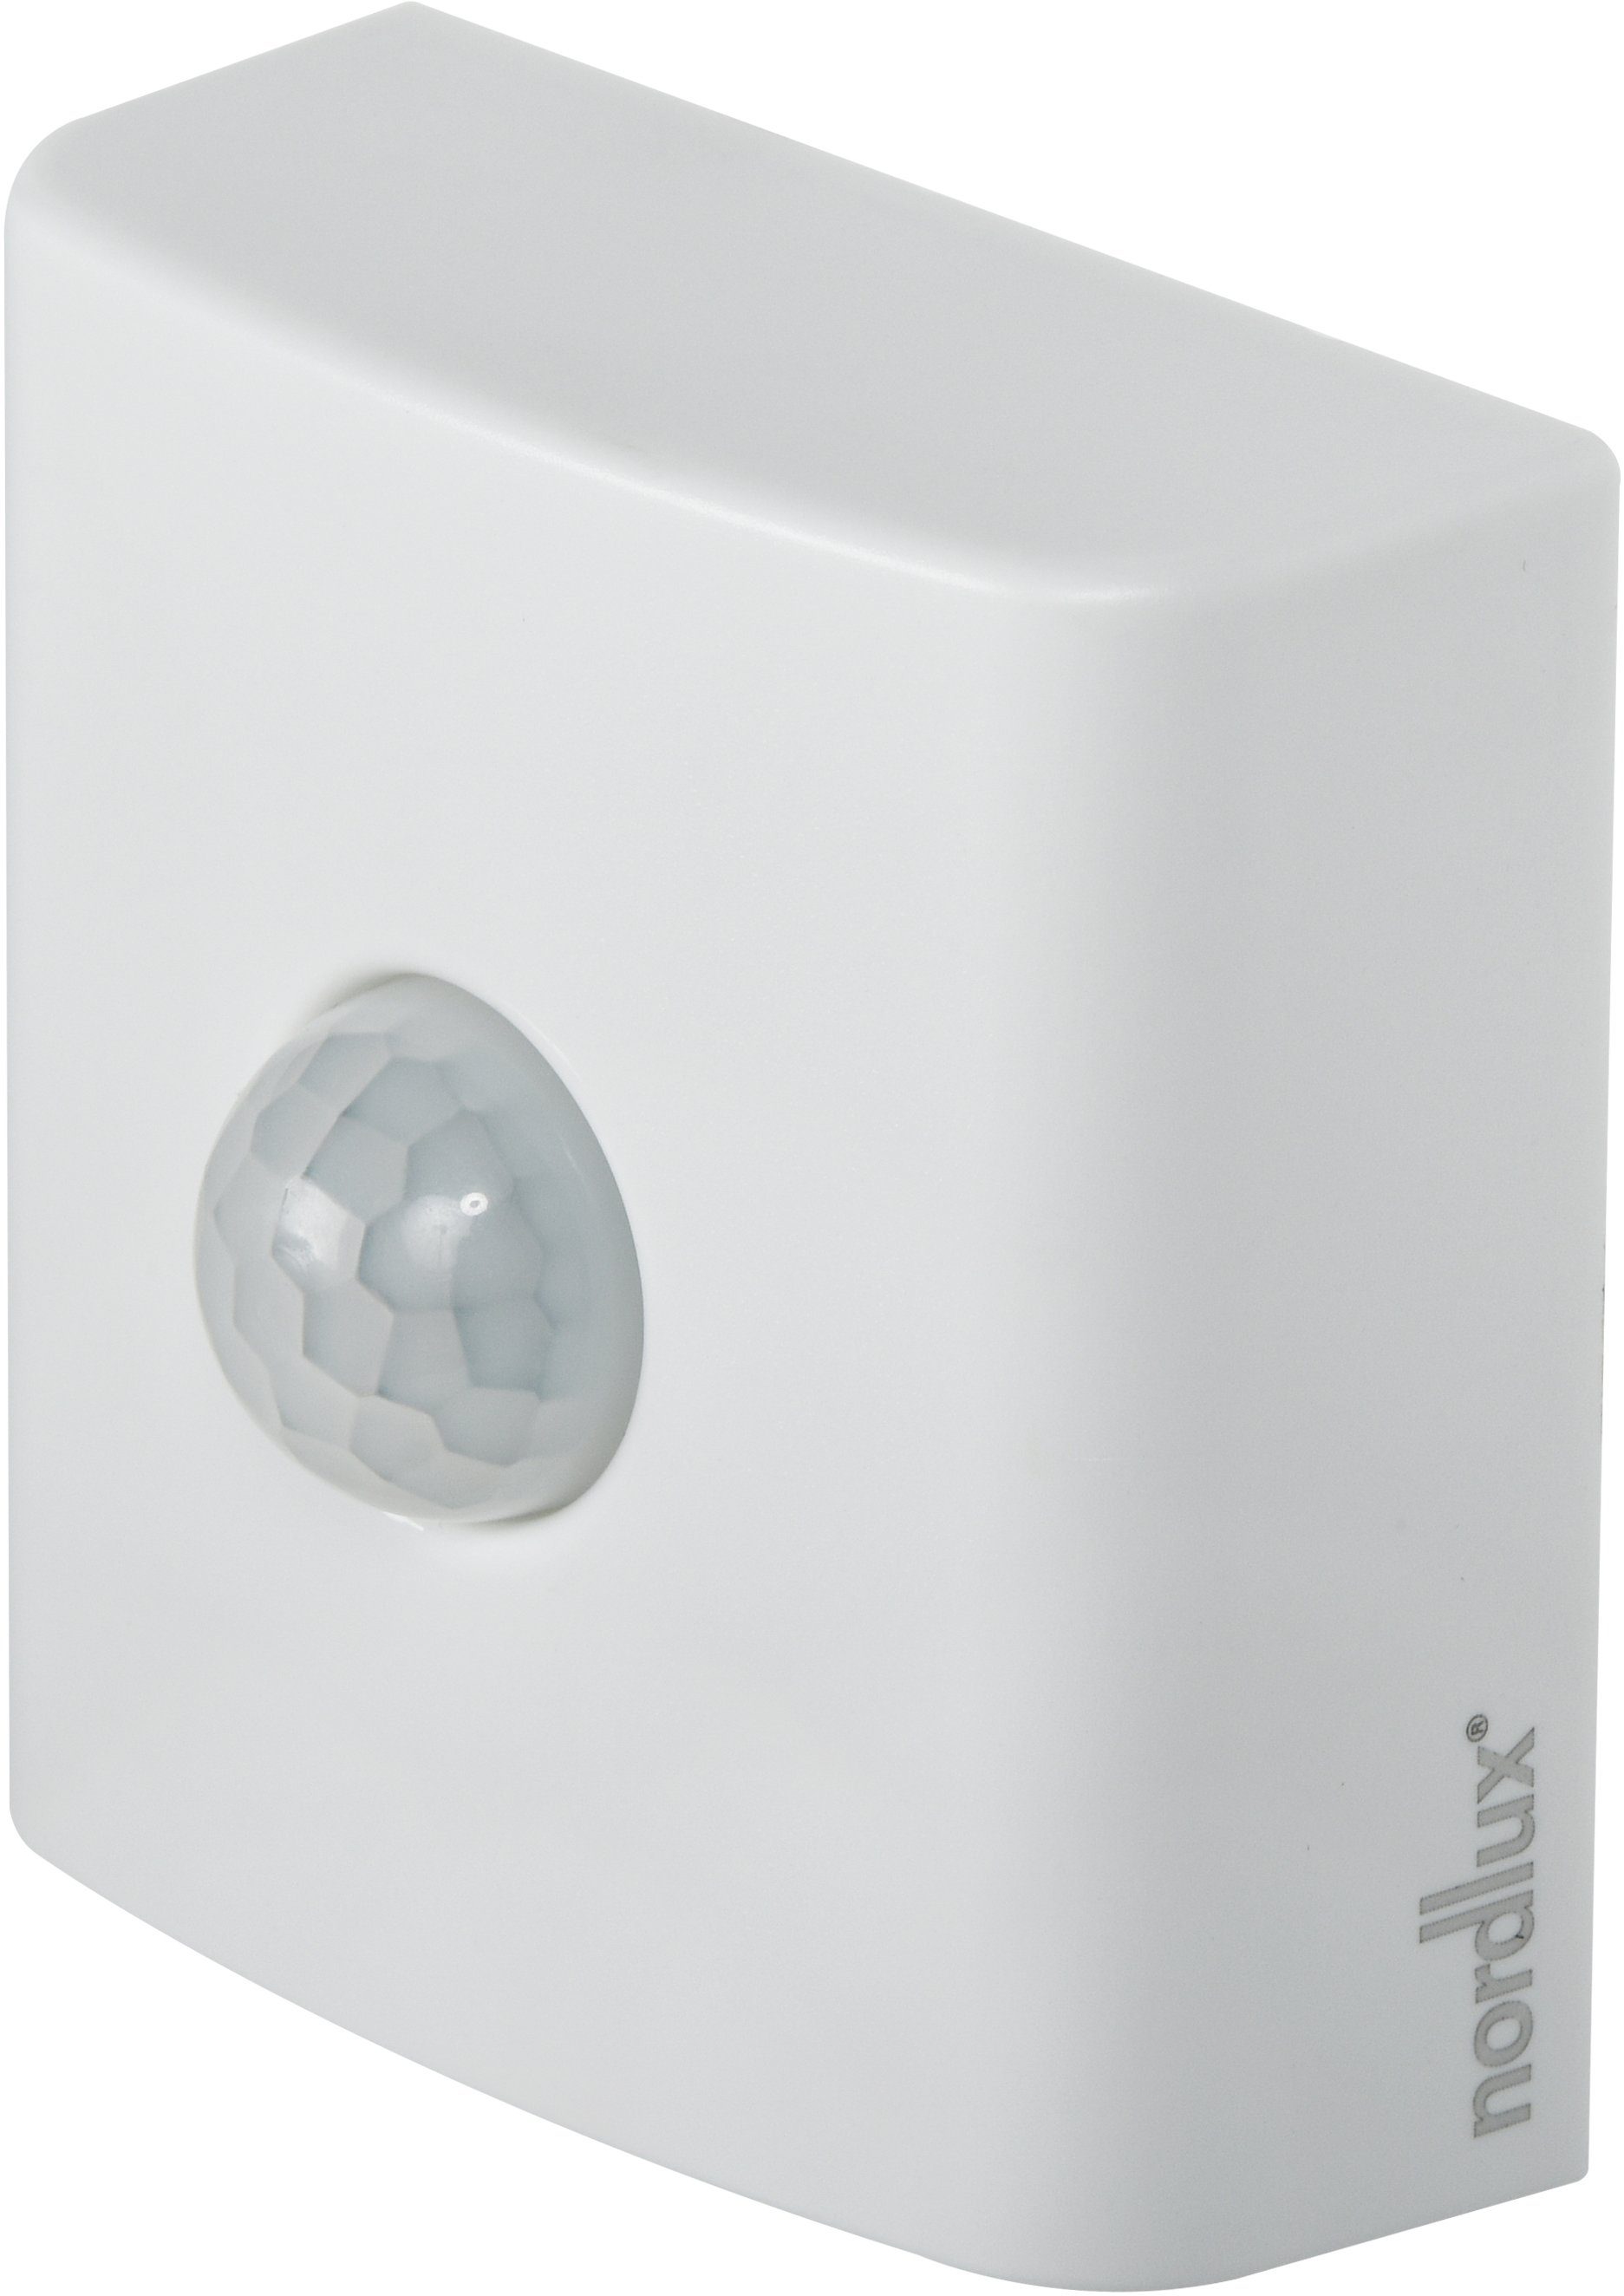 Nordlux Sensor Smart Mobiler Sensor, Bewegungs-, Dämmerungsmeldung Smartlight, weiß Home